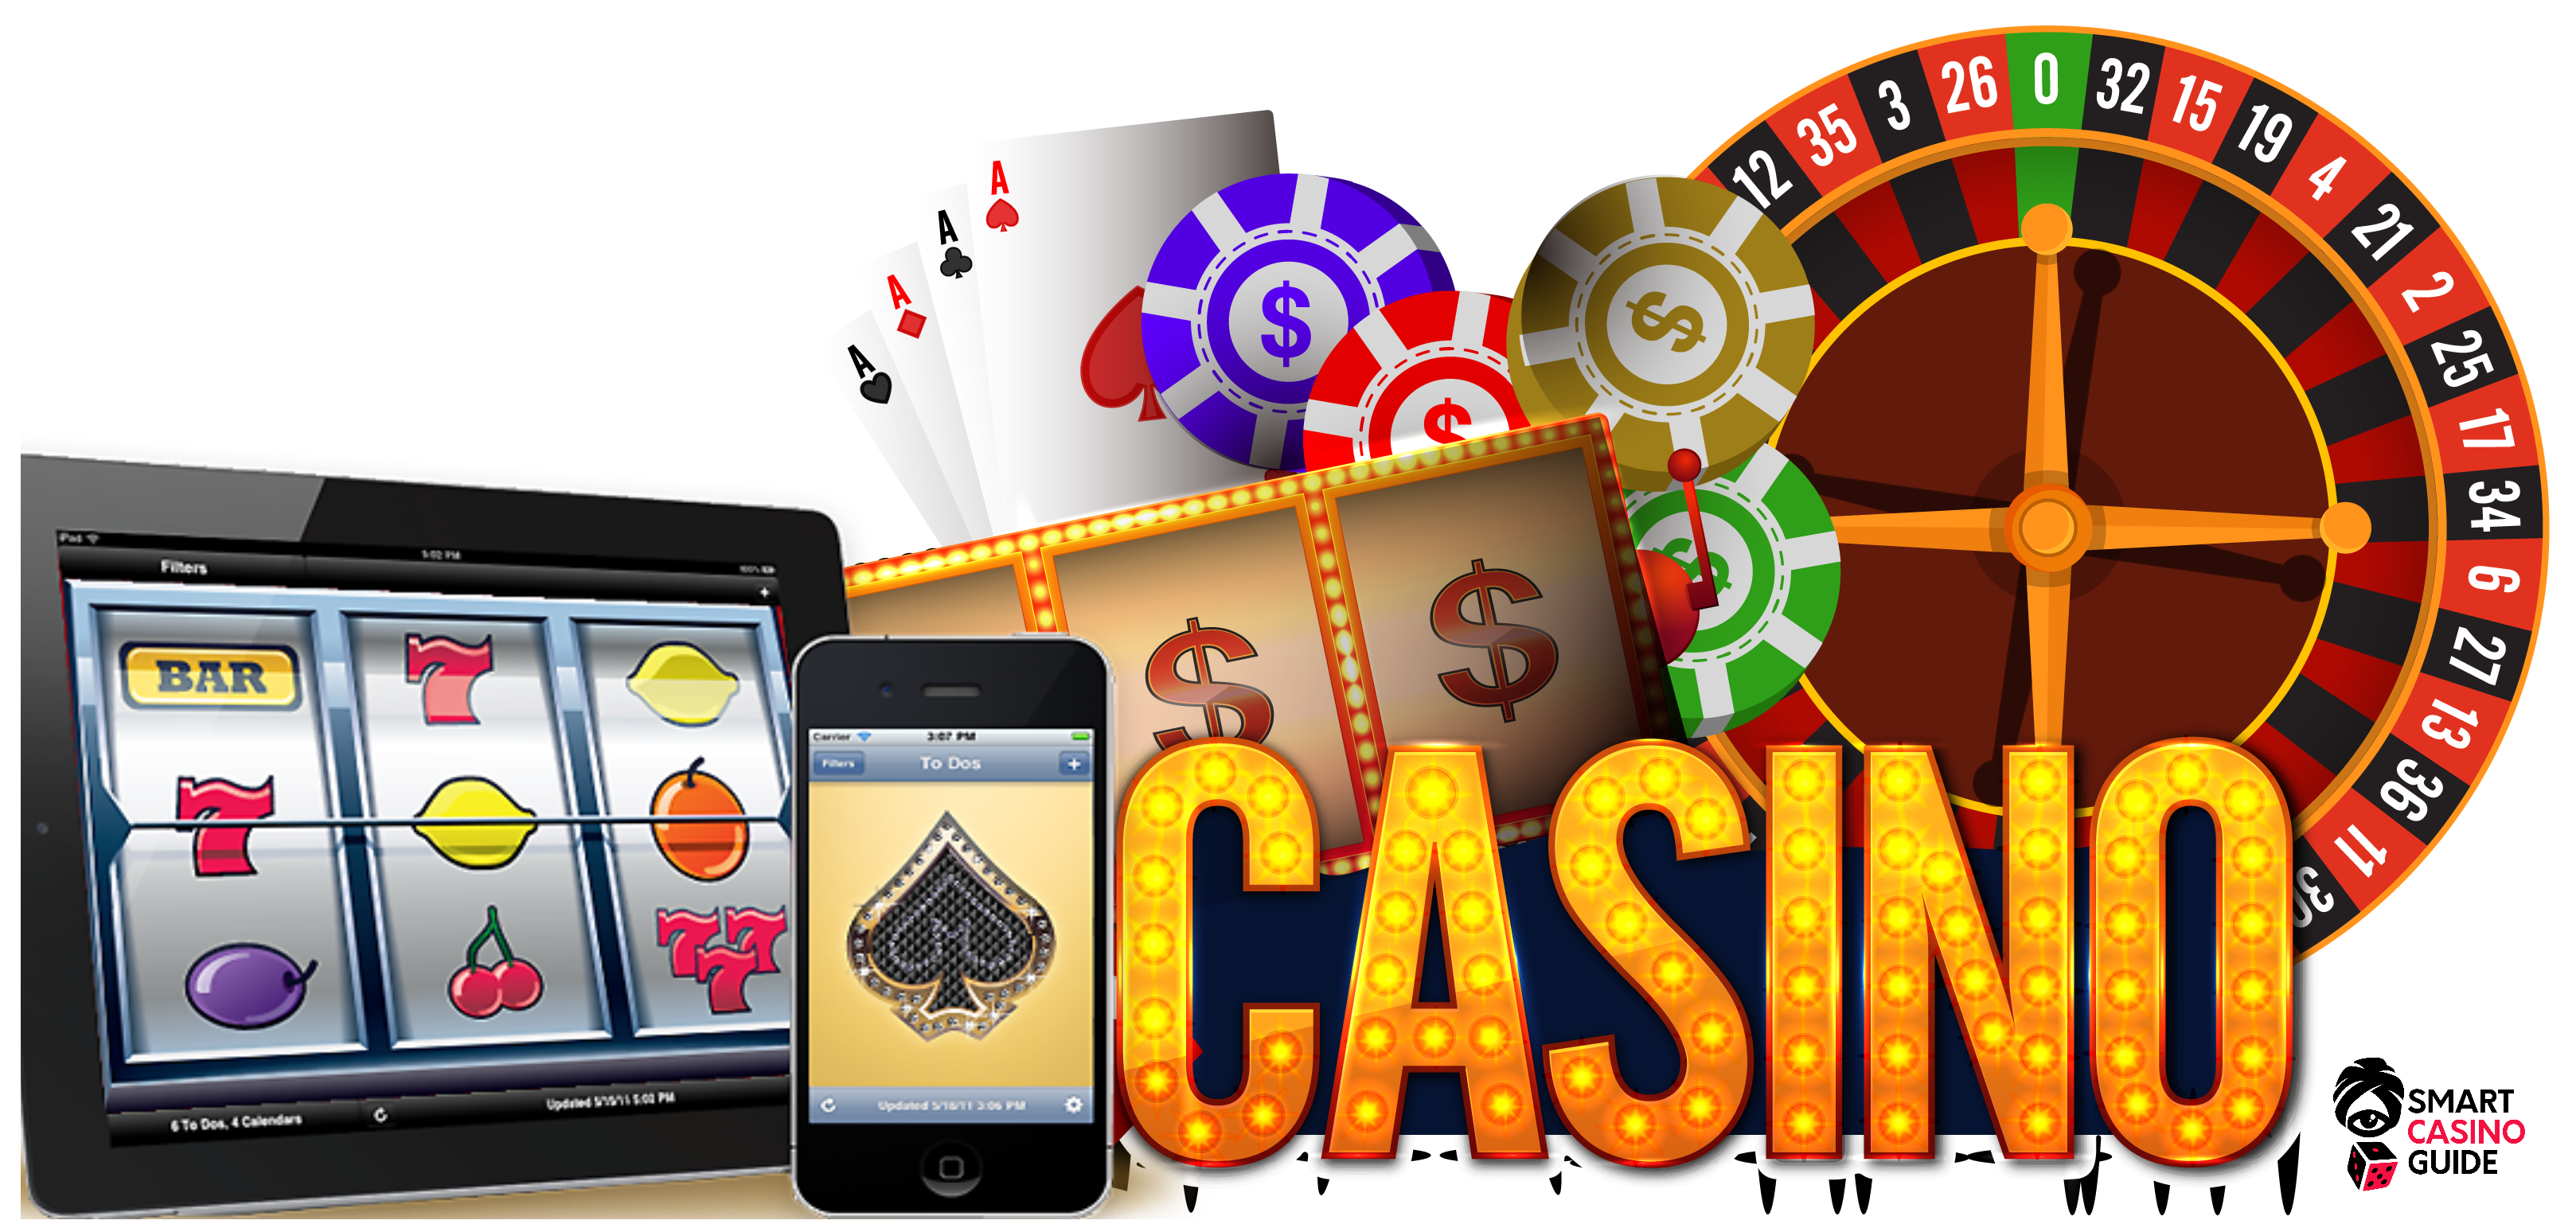 Mobil casino guide 21casino 355884